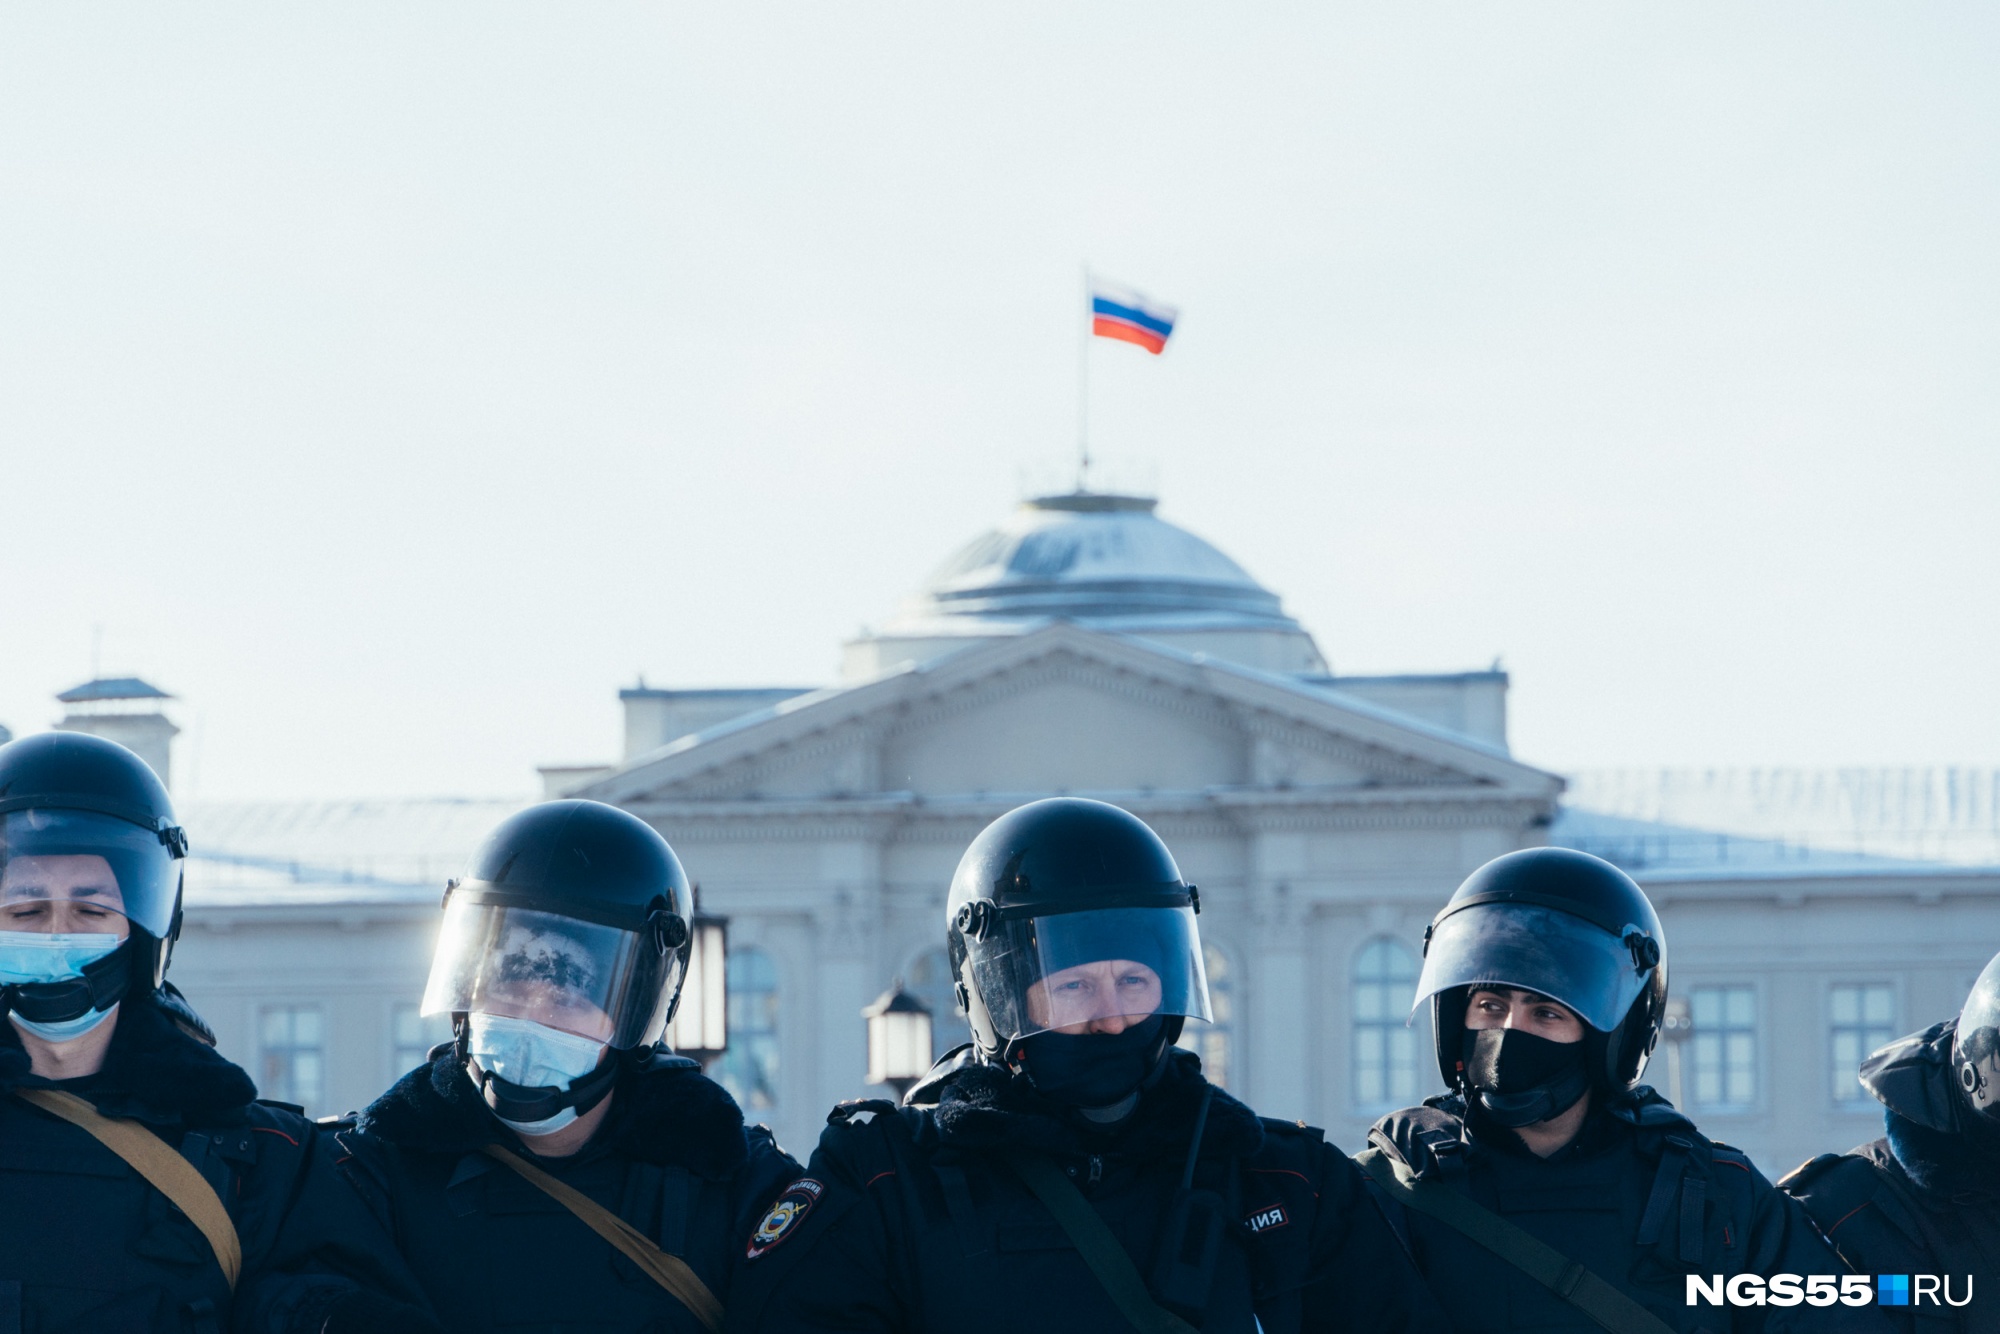 Смогли повторить: фоторепортаж с воскресной акции протеста в Омске